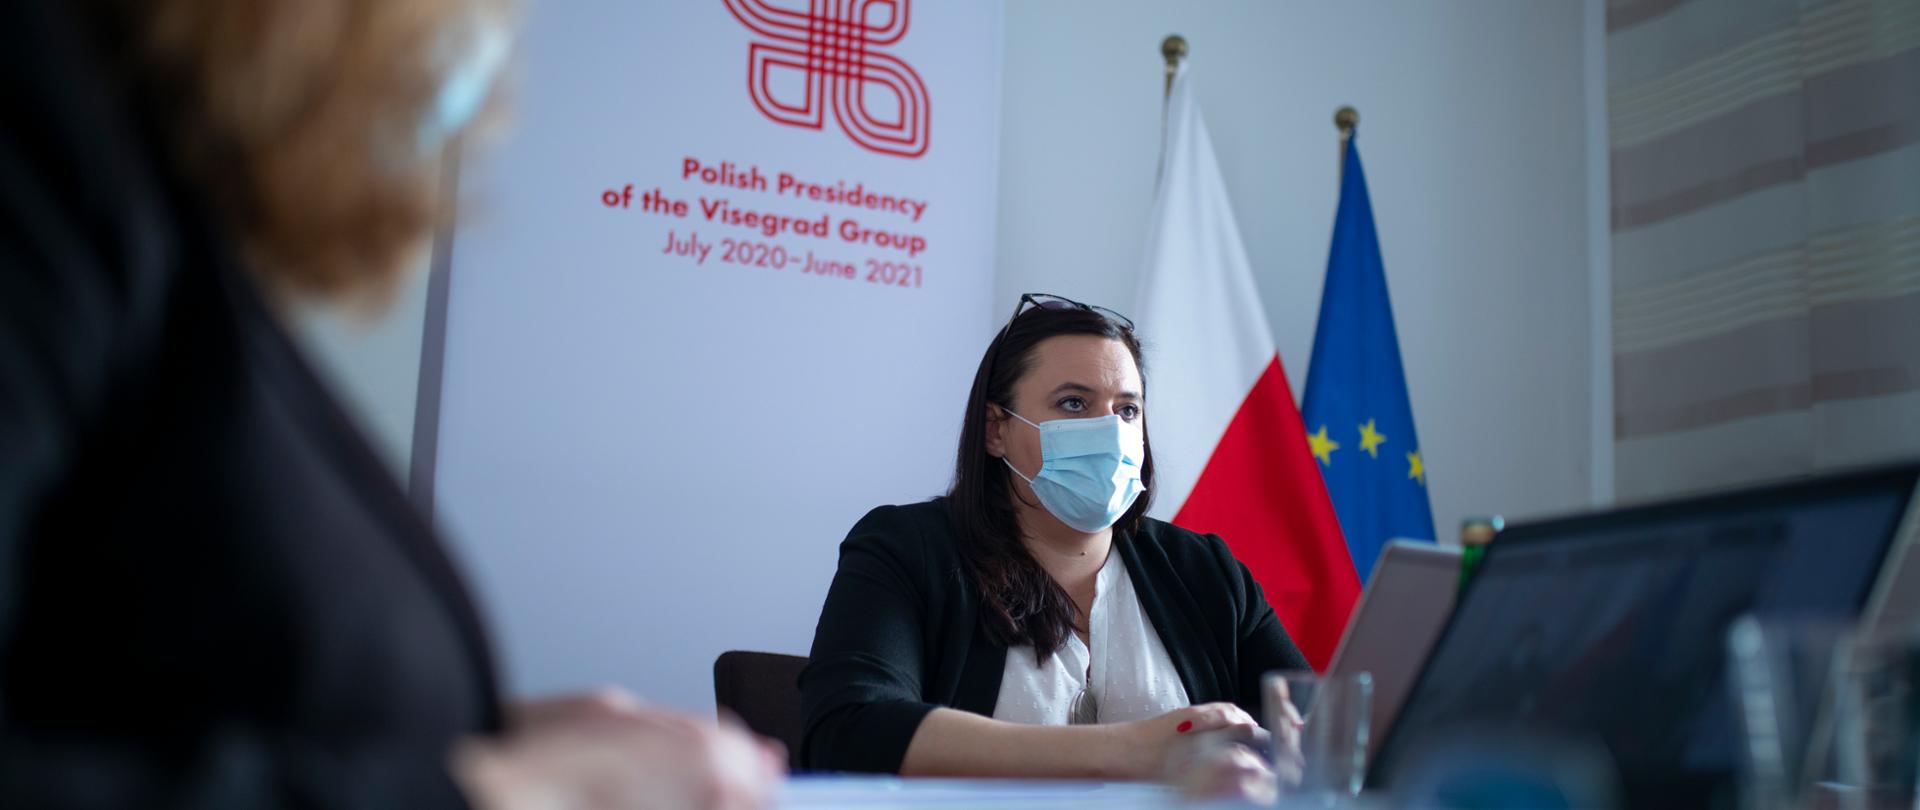 Na zdjęciu siedzi przy stole wiceminister Małgorzata Jarosińska-Jedynak, w tle logo polskiej prezydencji w Grupie Wyszehradzkiej.